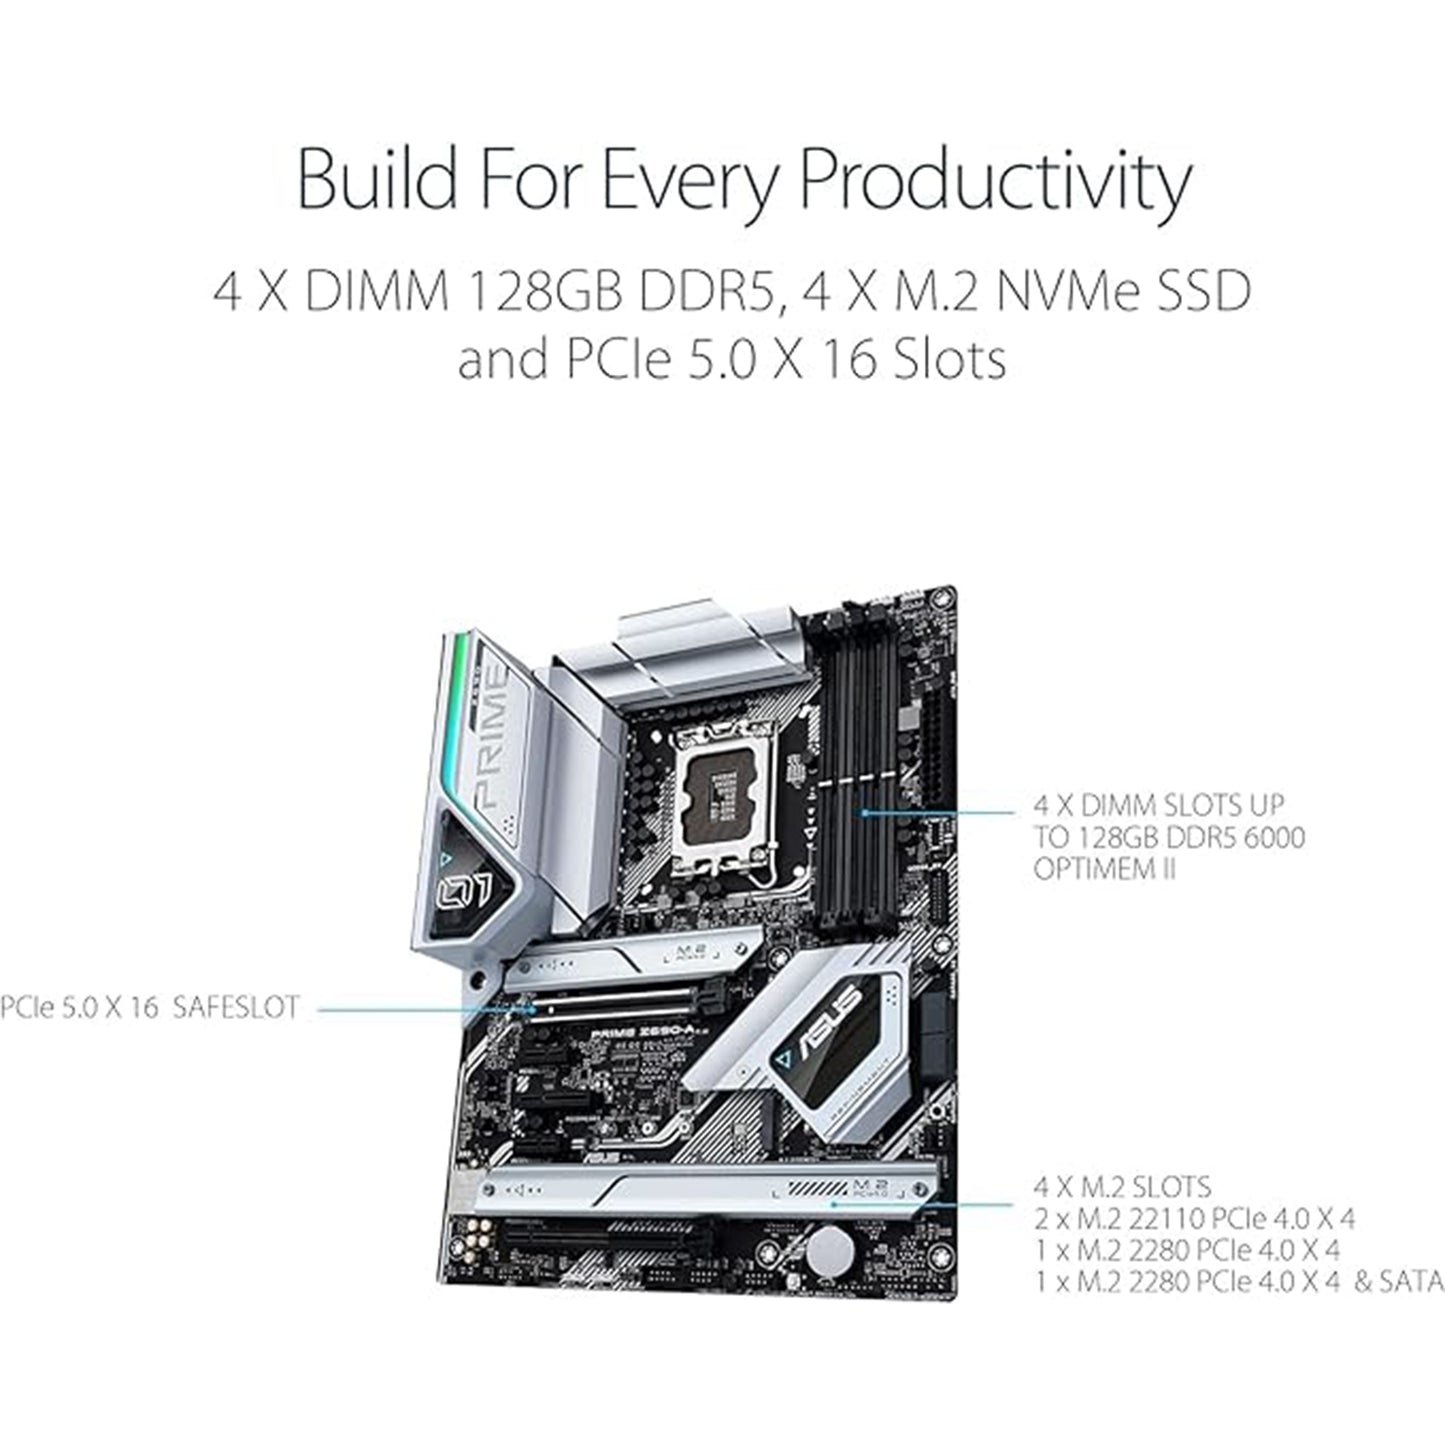 معالج Micro Center Intel Core i9-12900K 16 نواة يصل إلى 5.2 جيجا هرتز معالج سطح المكتب غير مقفل مع حزمة Intel UHD Graphics 770 المدمجة مع اللوحة الأم ASUS Prime Z690-A DDR5 ATX 